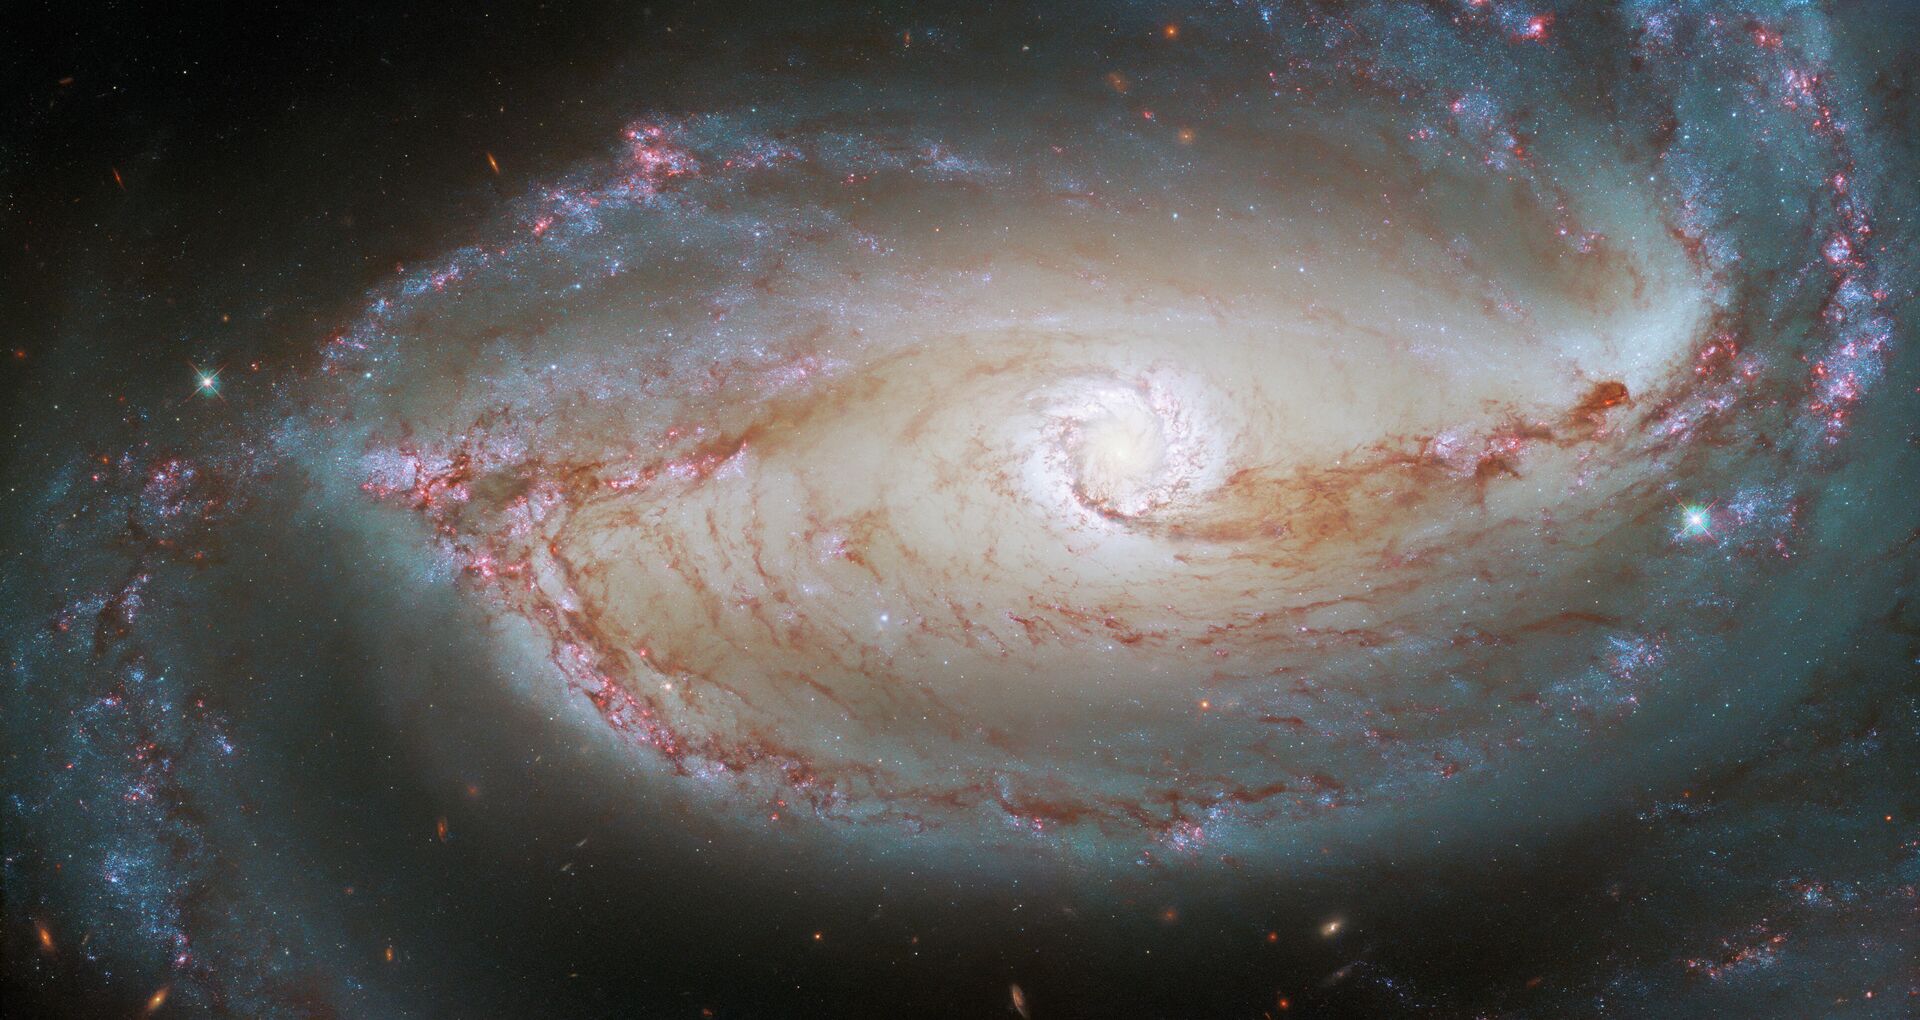 O Telescópio Espacial Hubble registrou uma foto da NGC 1097, uma galáxia espiral barrada, localizada a 48 milhões de anos-luz da Terra - Sputnik Brasil, 1920, 22.03.2022